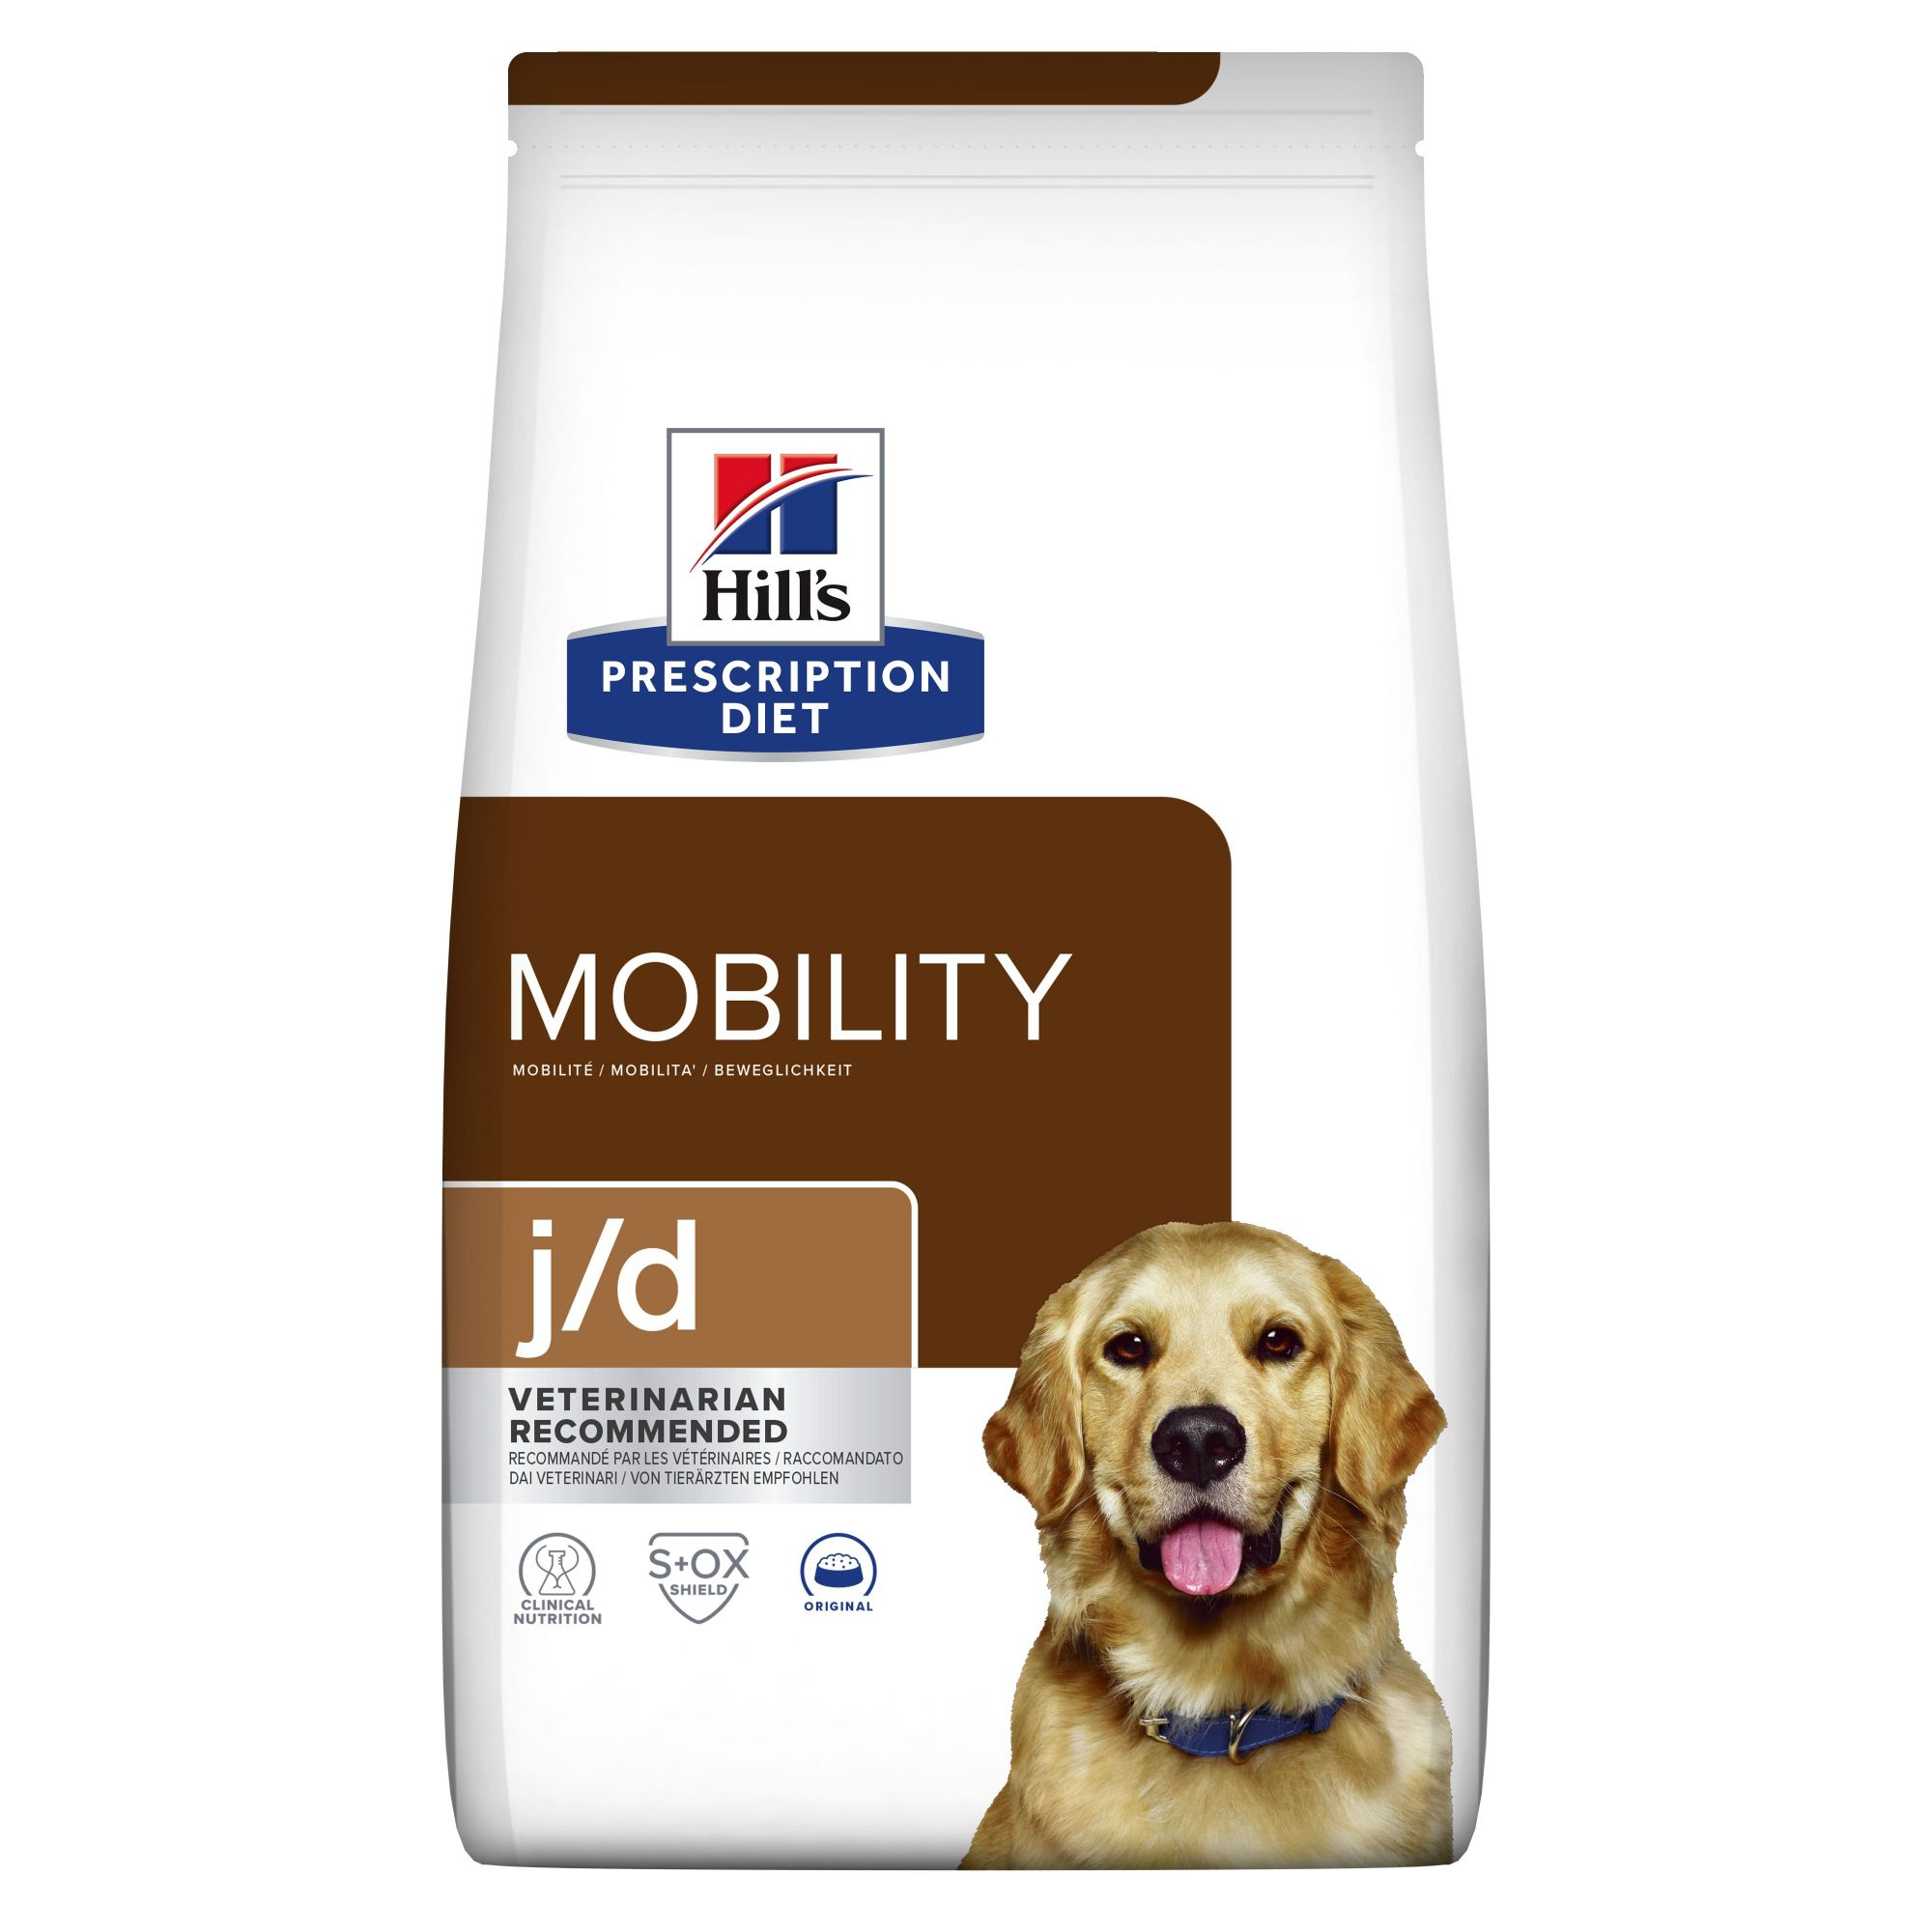 HILL'S Prescription Diet j/d Mobility con pollo para perro adulto